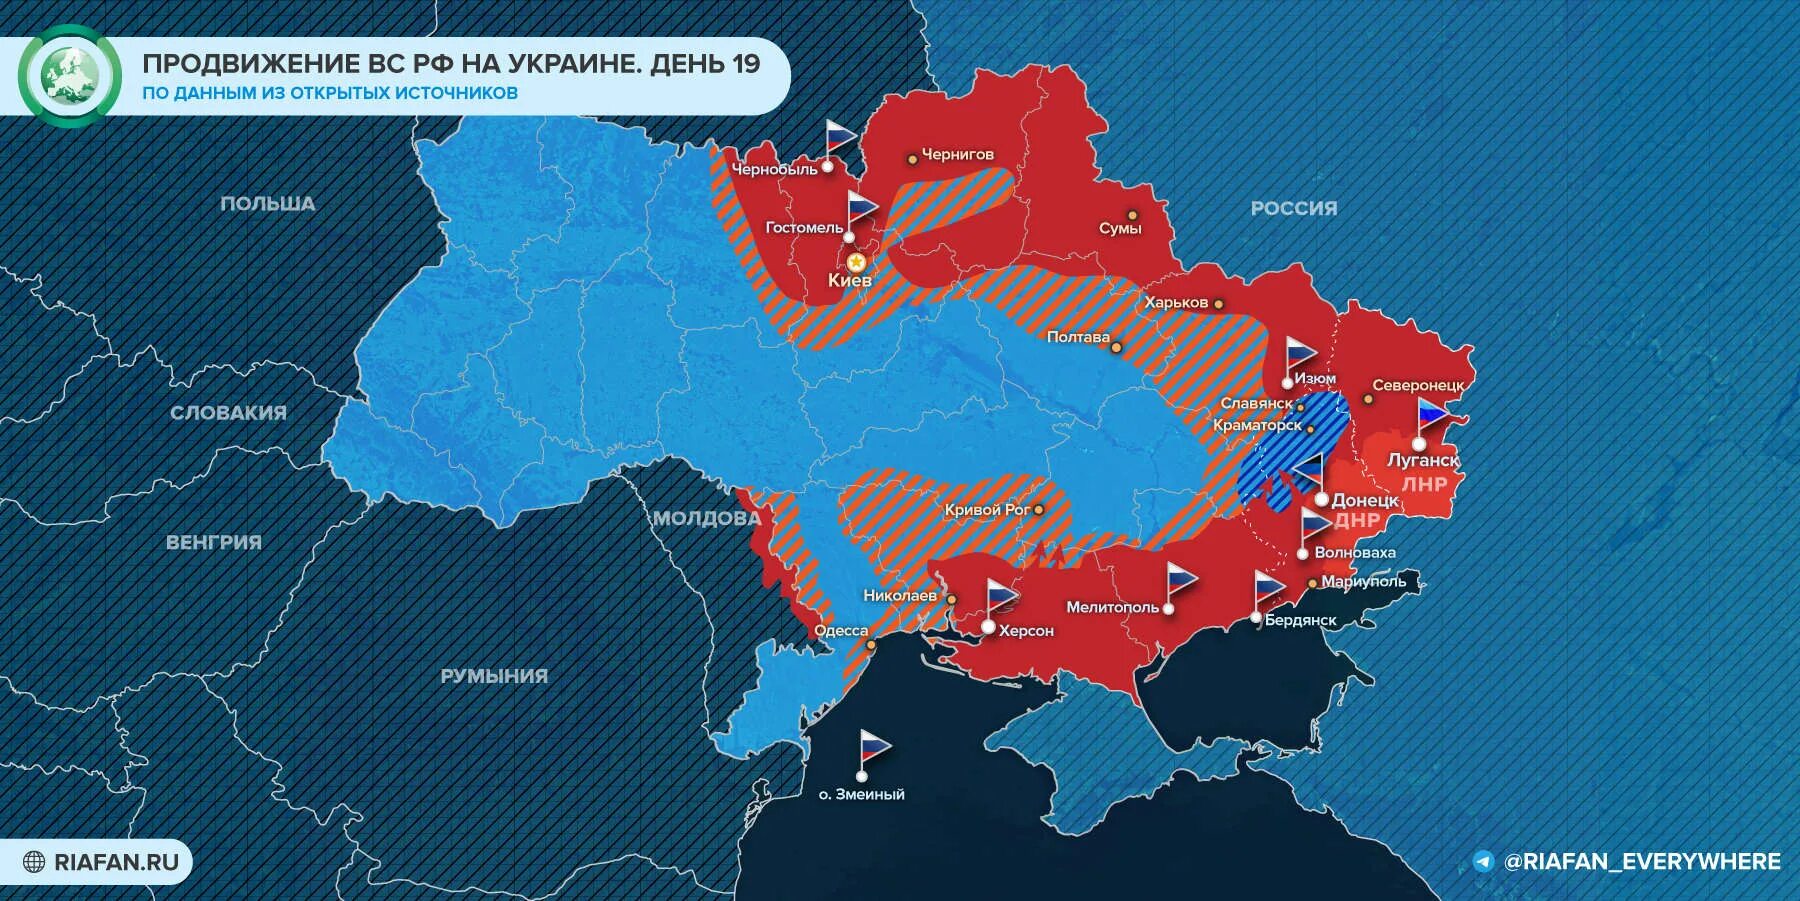 Продвижение россии на украине сегодня. Карта захвата территории Украины. Карта Украины военных действий на Украине. Карта захвата территории Украины Россией на сегодня. Расстановка сил на Украине.